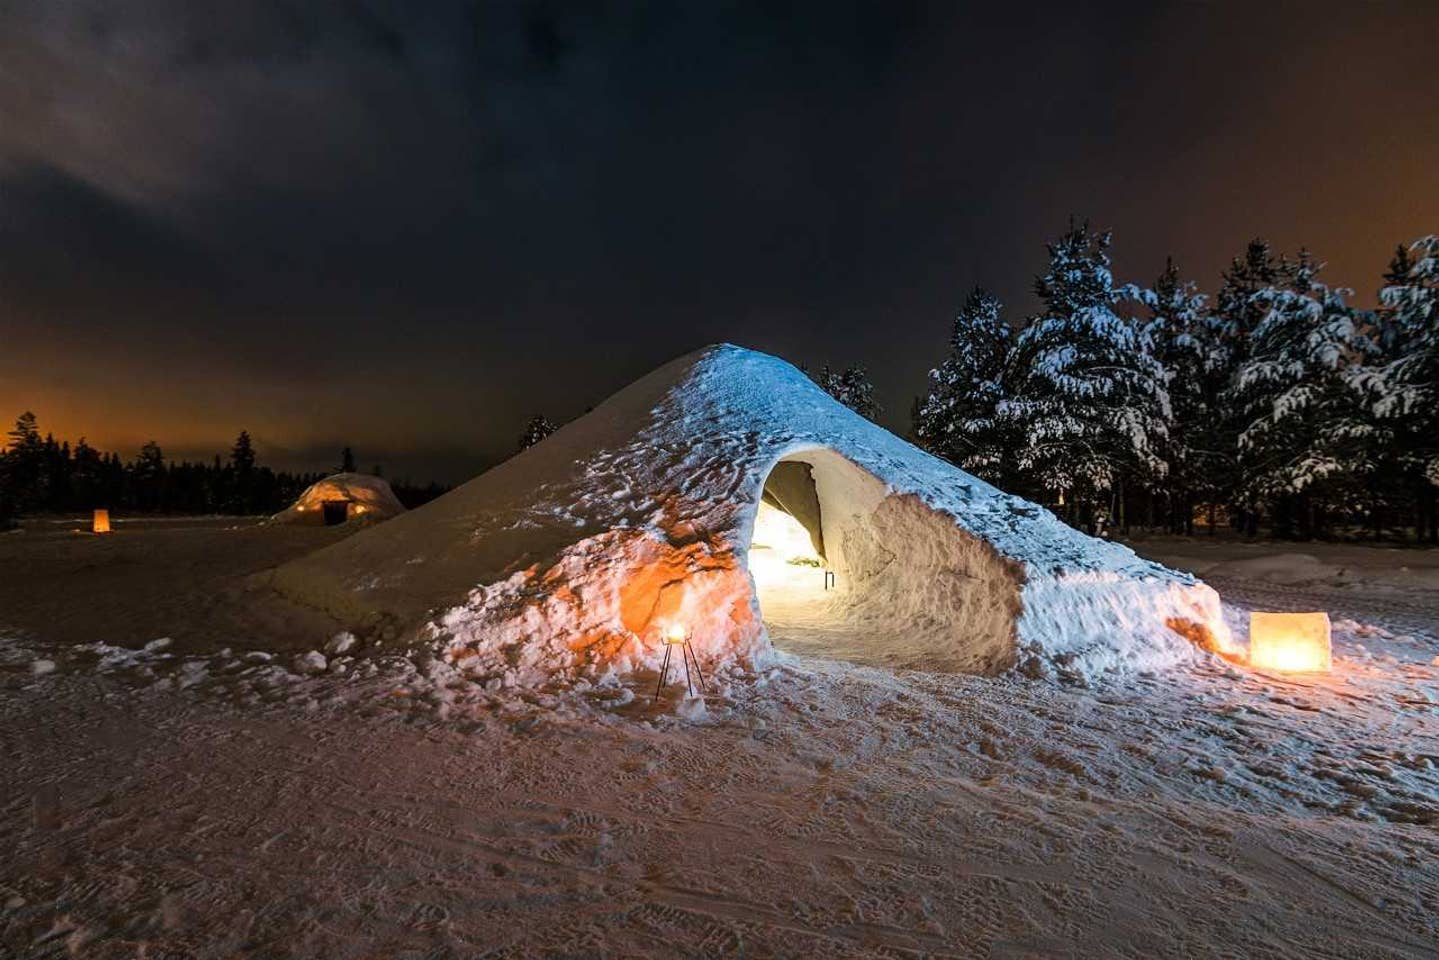 overnachten in een iglo finland airbnb vakantie travel